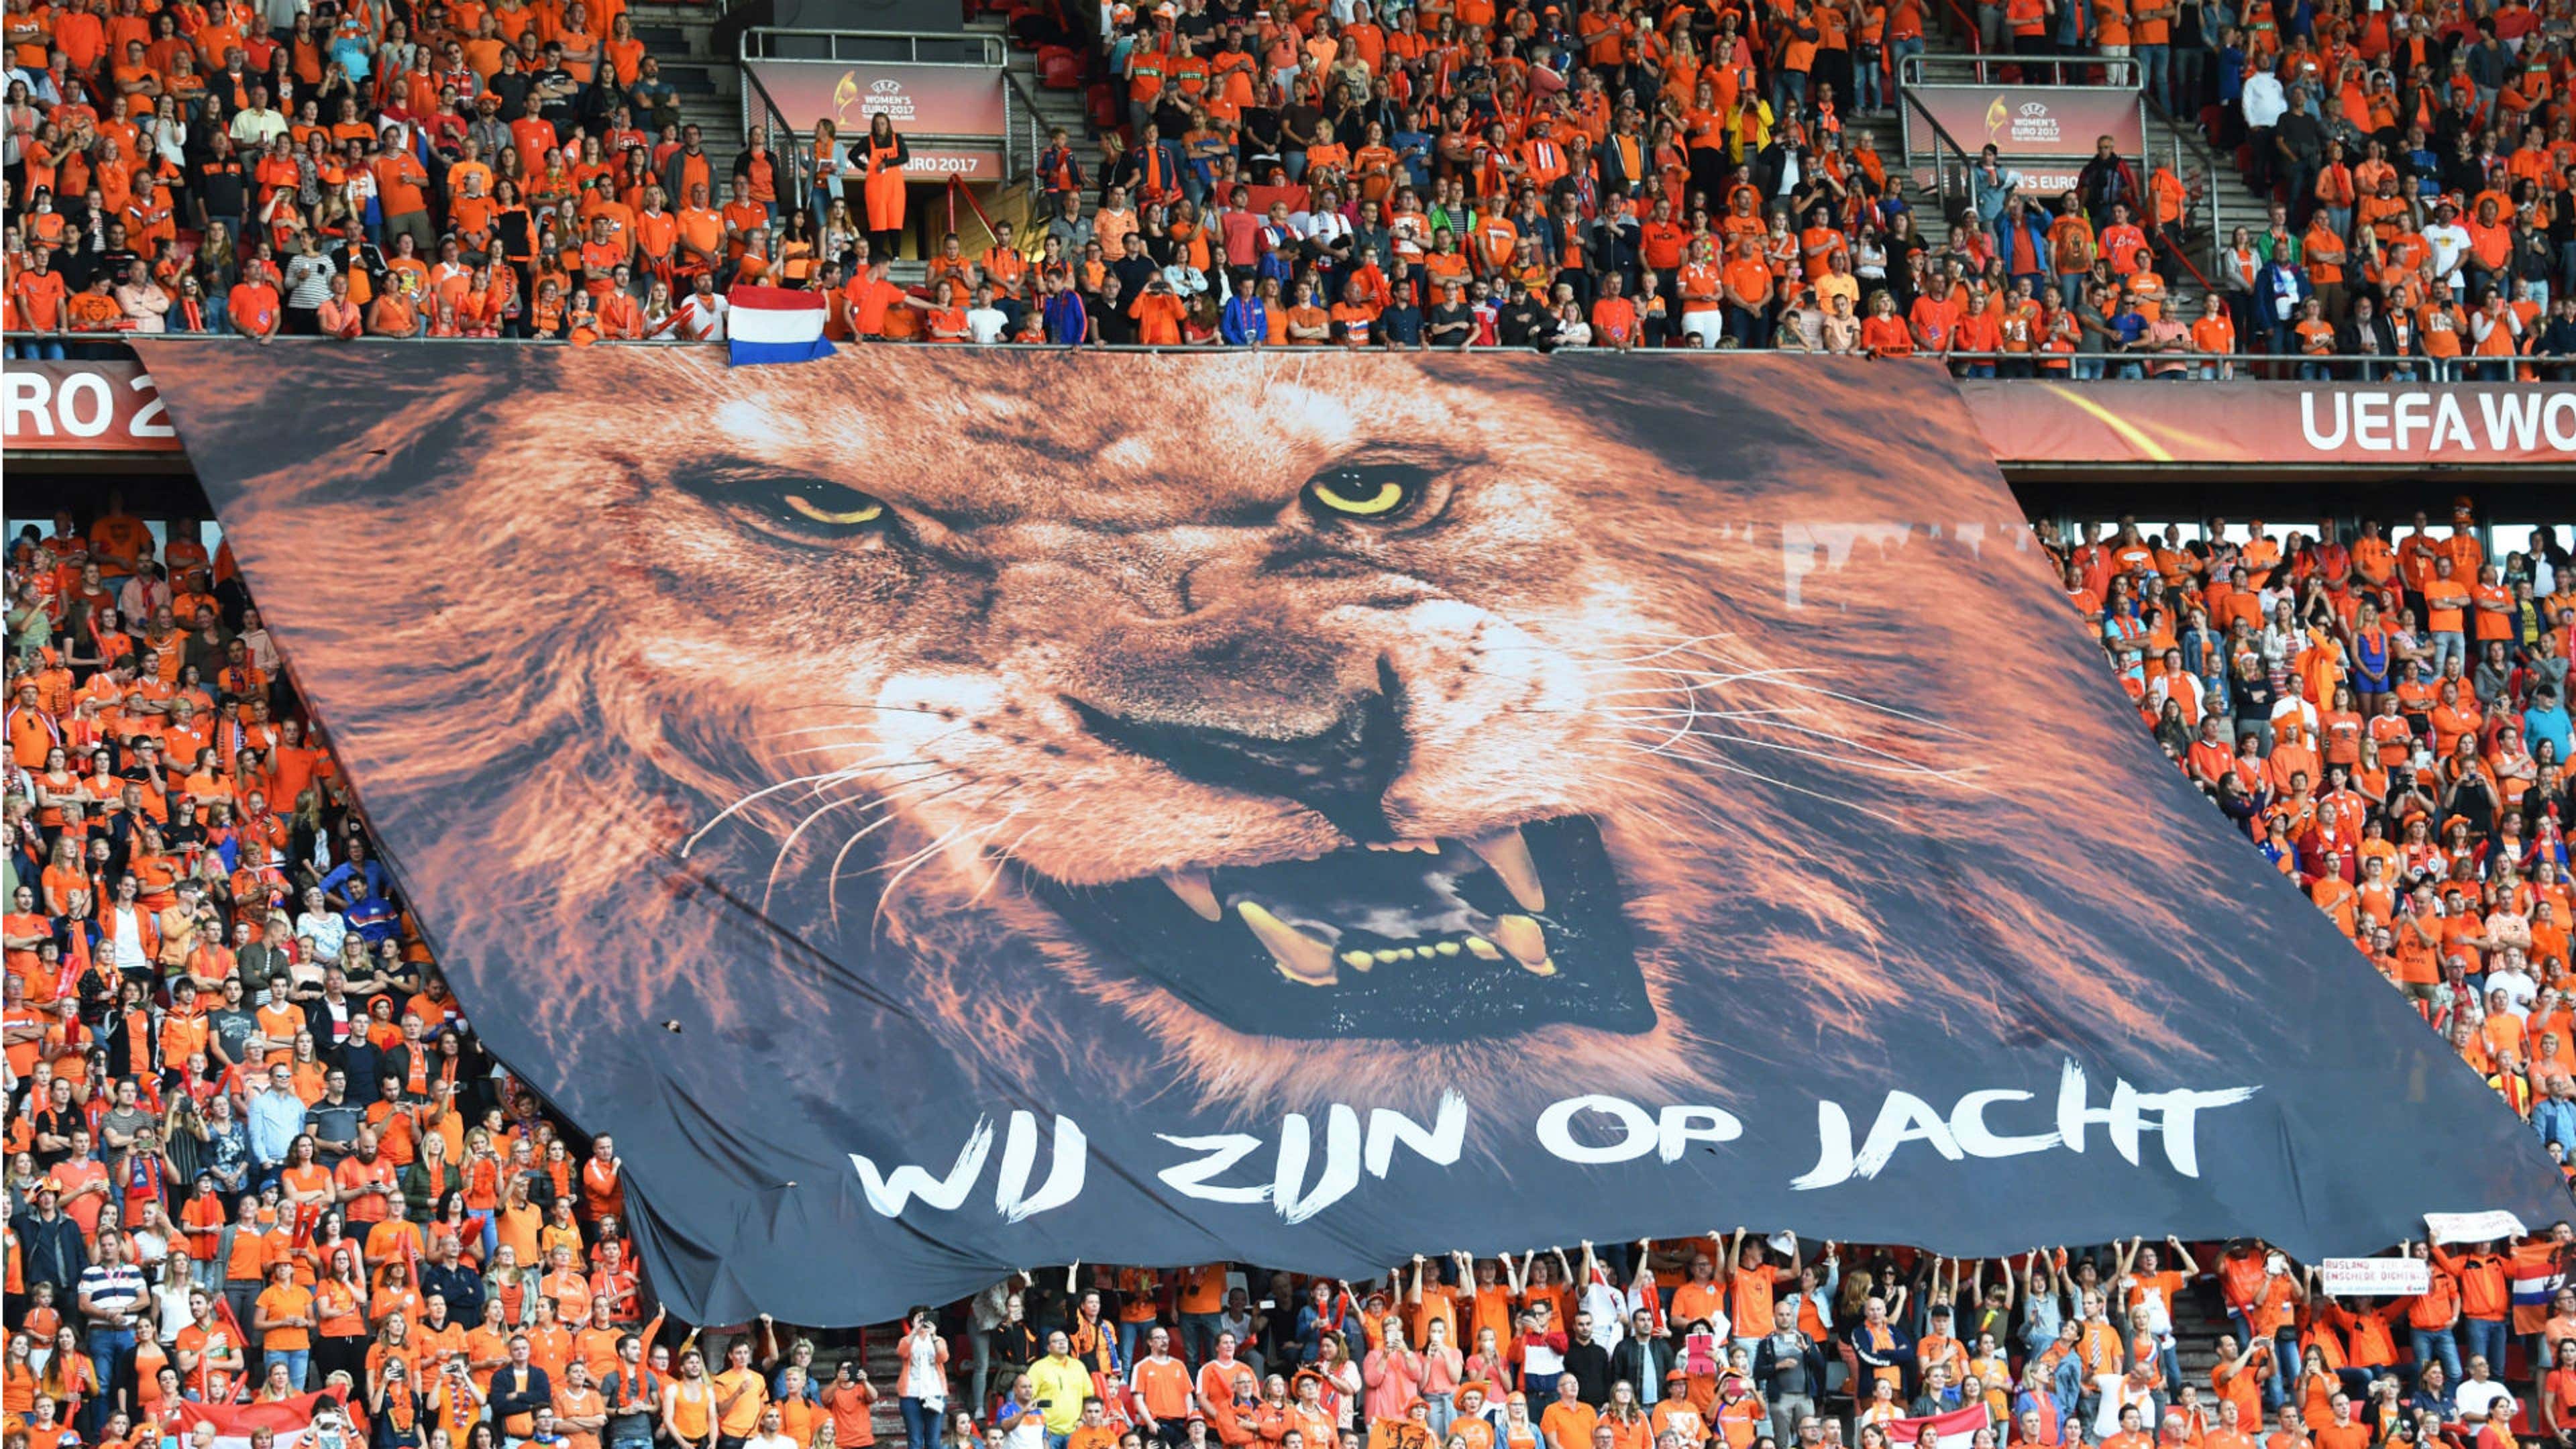 Netherlands fans